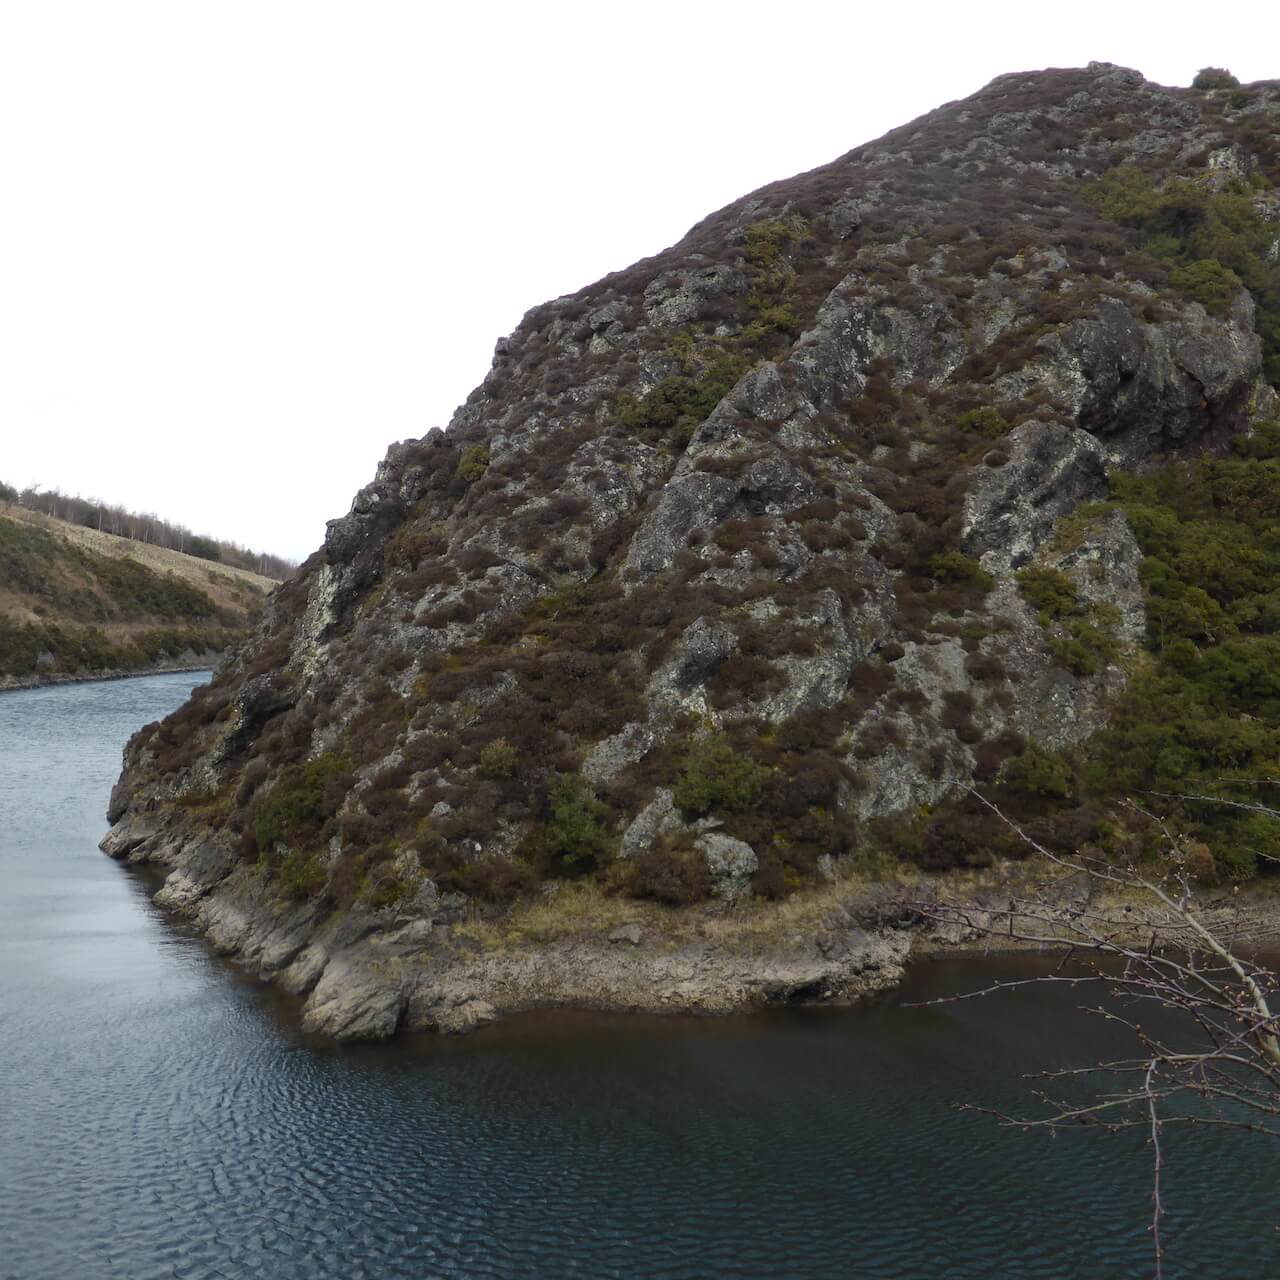 Torduff Reservoir